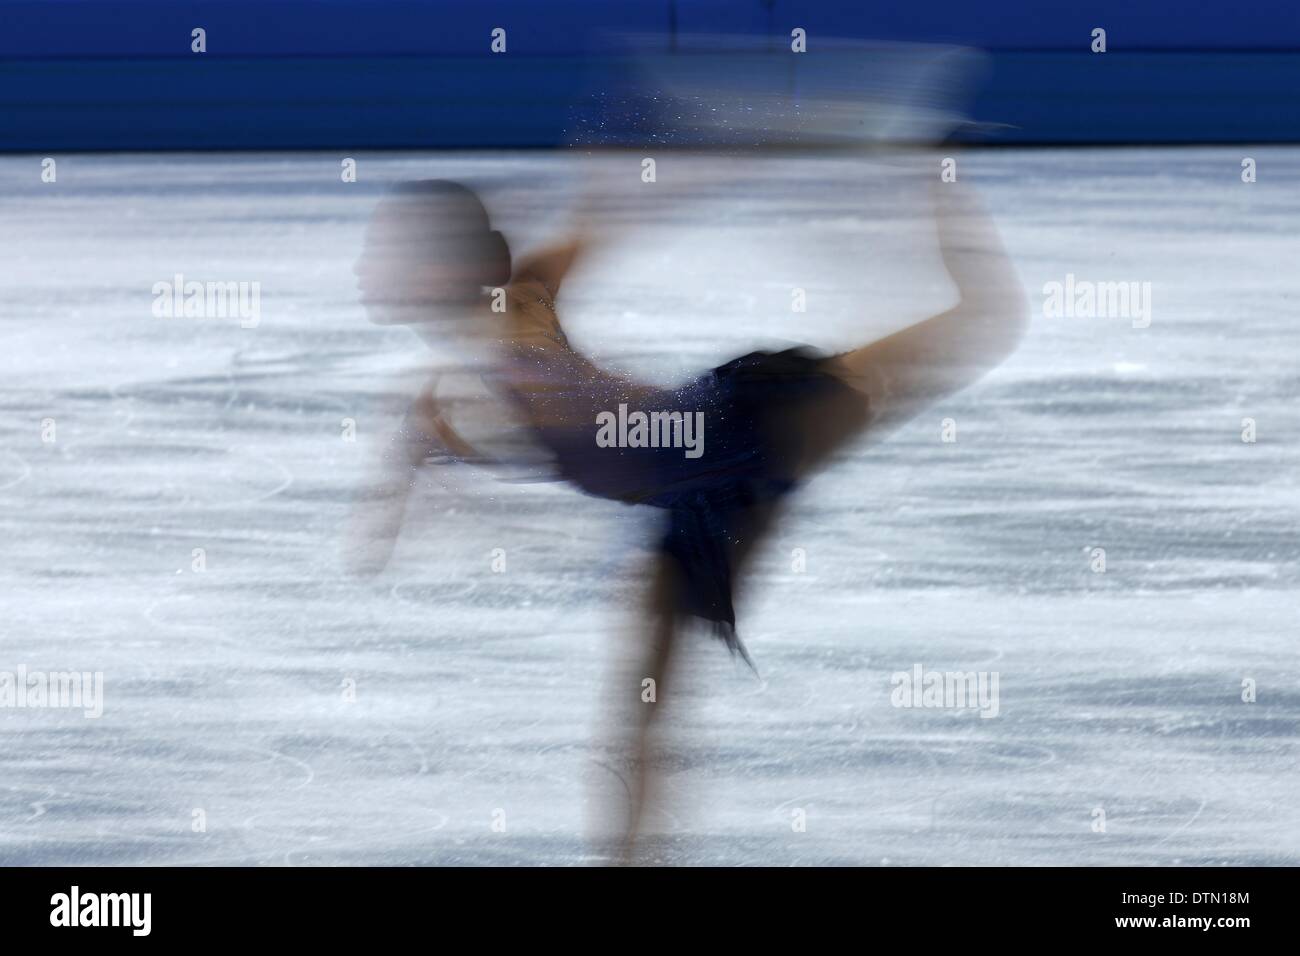 Sochi, Russie. 20 févr. 2014. Mao Asada du Japon s'effectue dans le patinage libre à la compétition de Patinage Artistique Patinage Iceberg Palais lors des Jeux Olympiques de Sotchi 2014. Dpa : Crédit photo alliance/Alamy Live News Banque D'Images